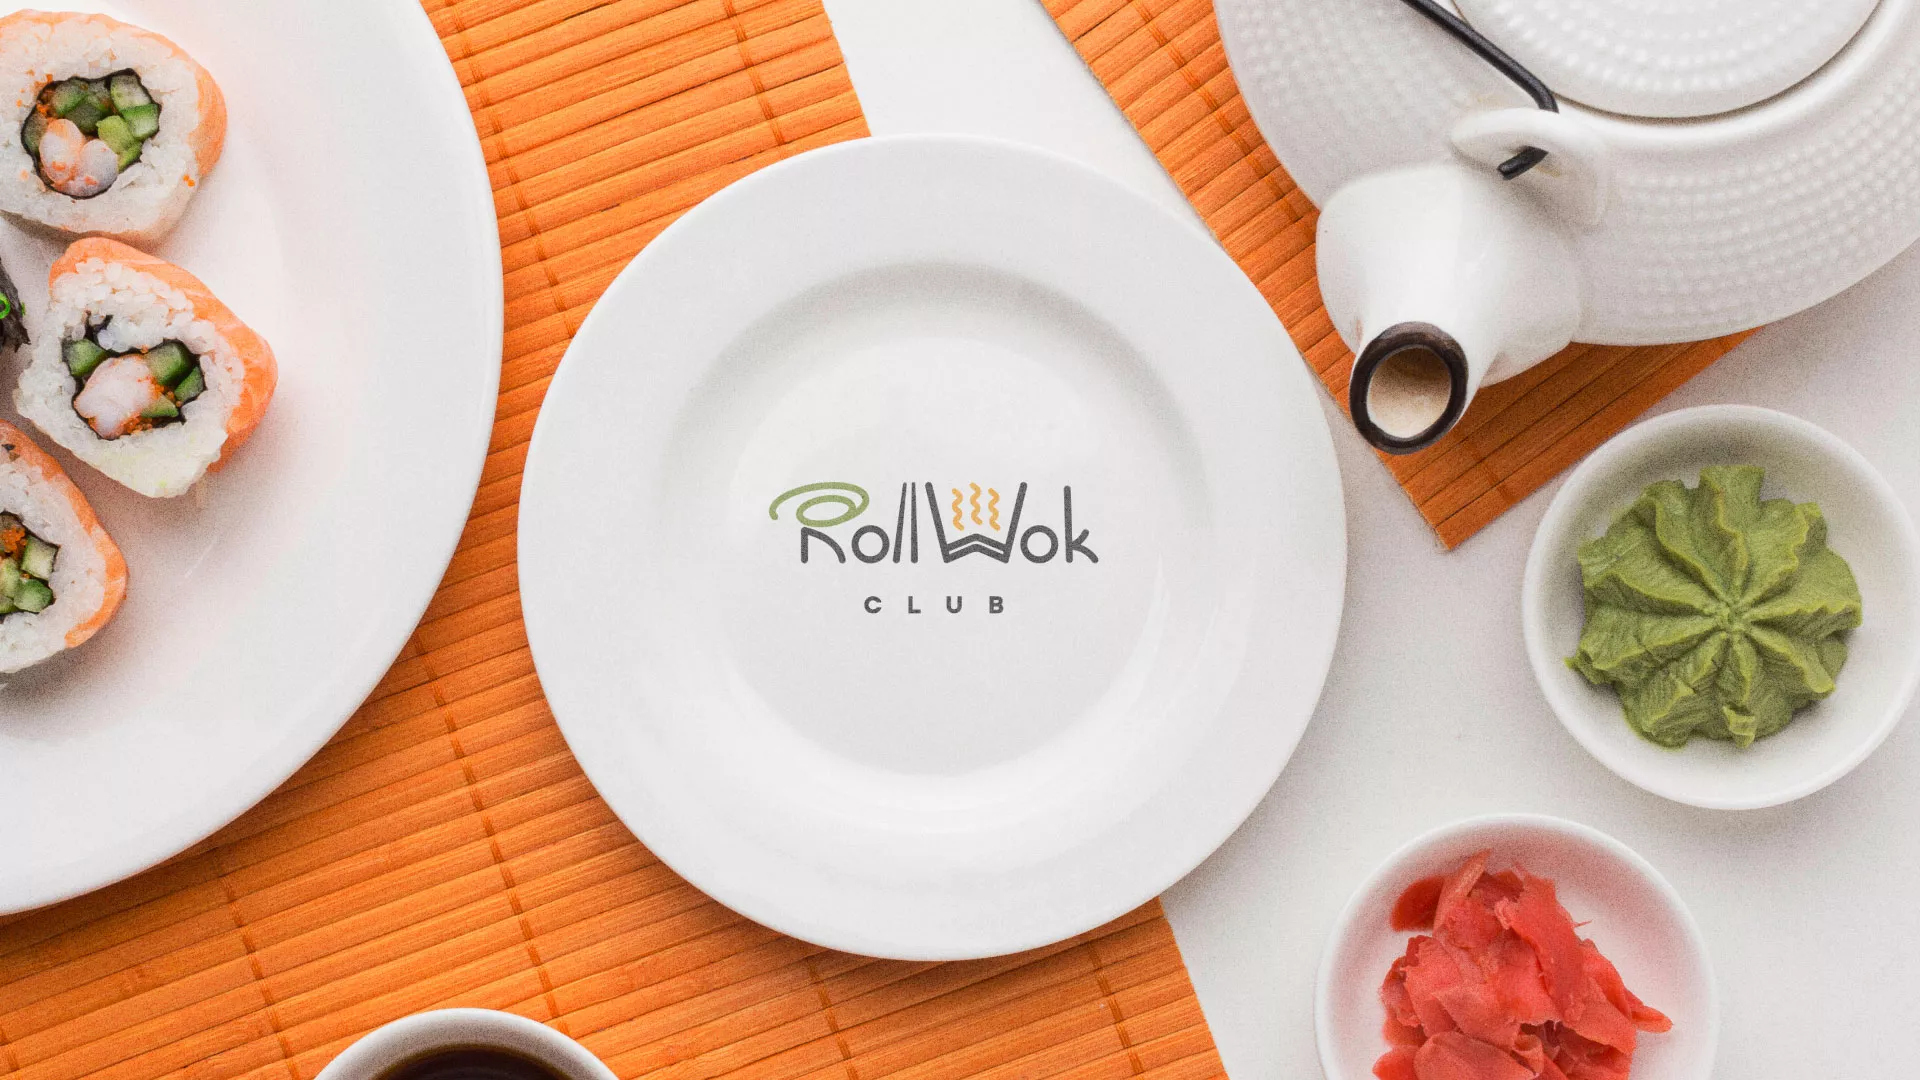 Разработка логотипа и фирменного стиля суши-бара «Roll Wok Club» в Сосновке